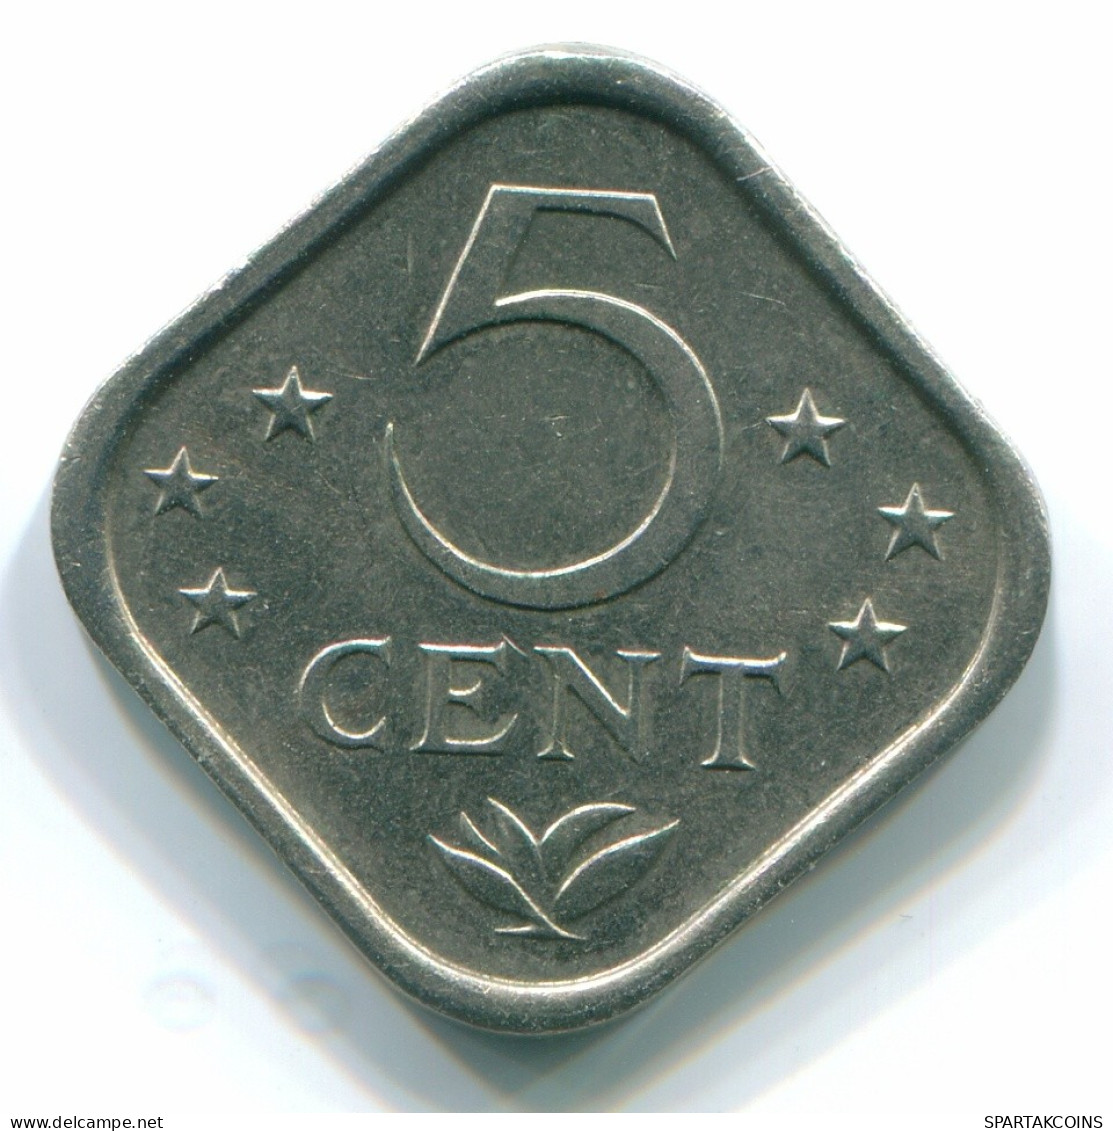 5 CENTS 1979 NETHERLANDS ANTILLES Nickel Colonial Coin #S12295.U.A - Antillas Neerlandesas